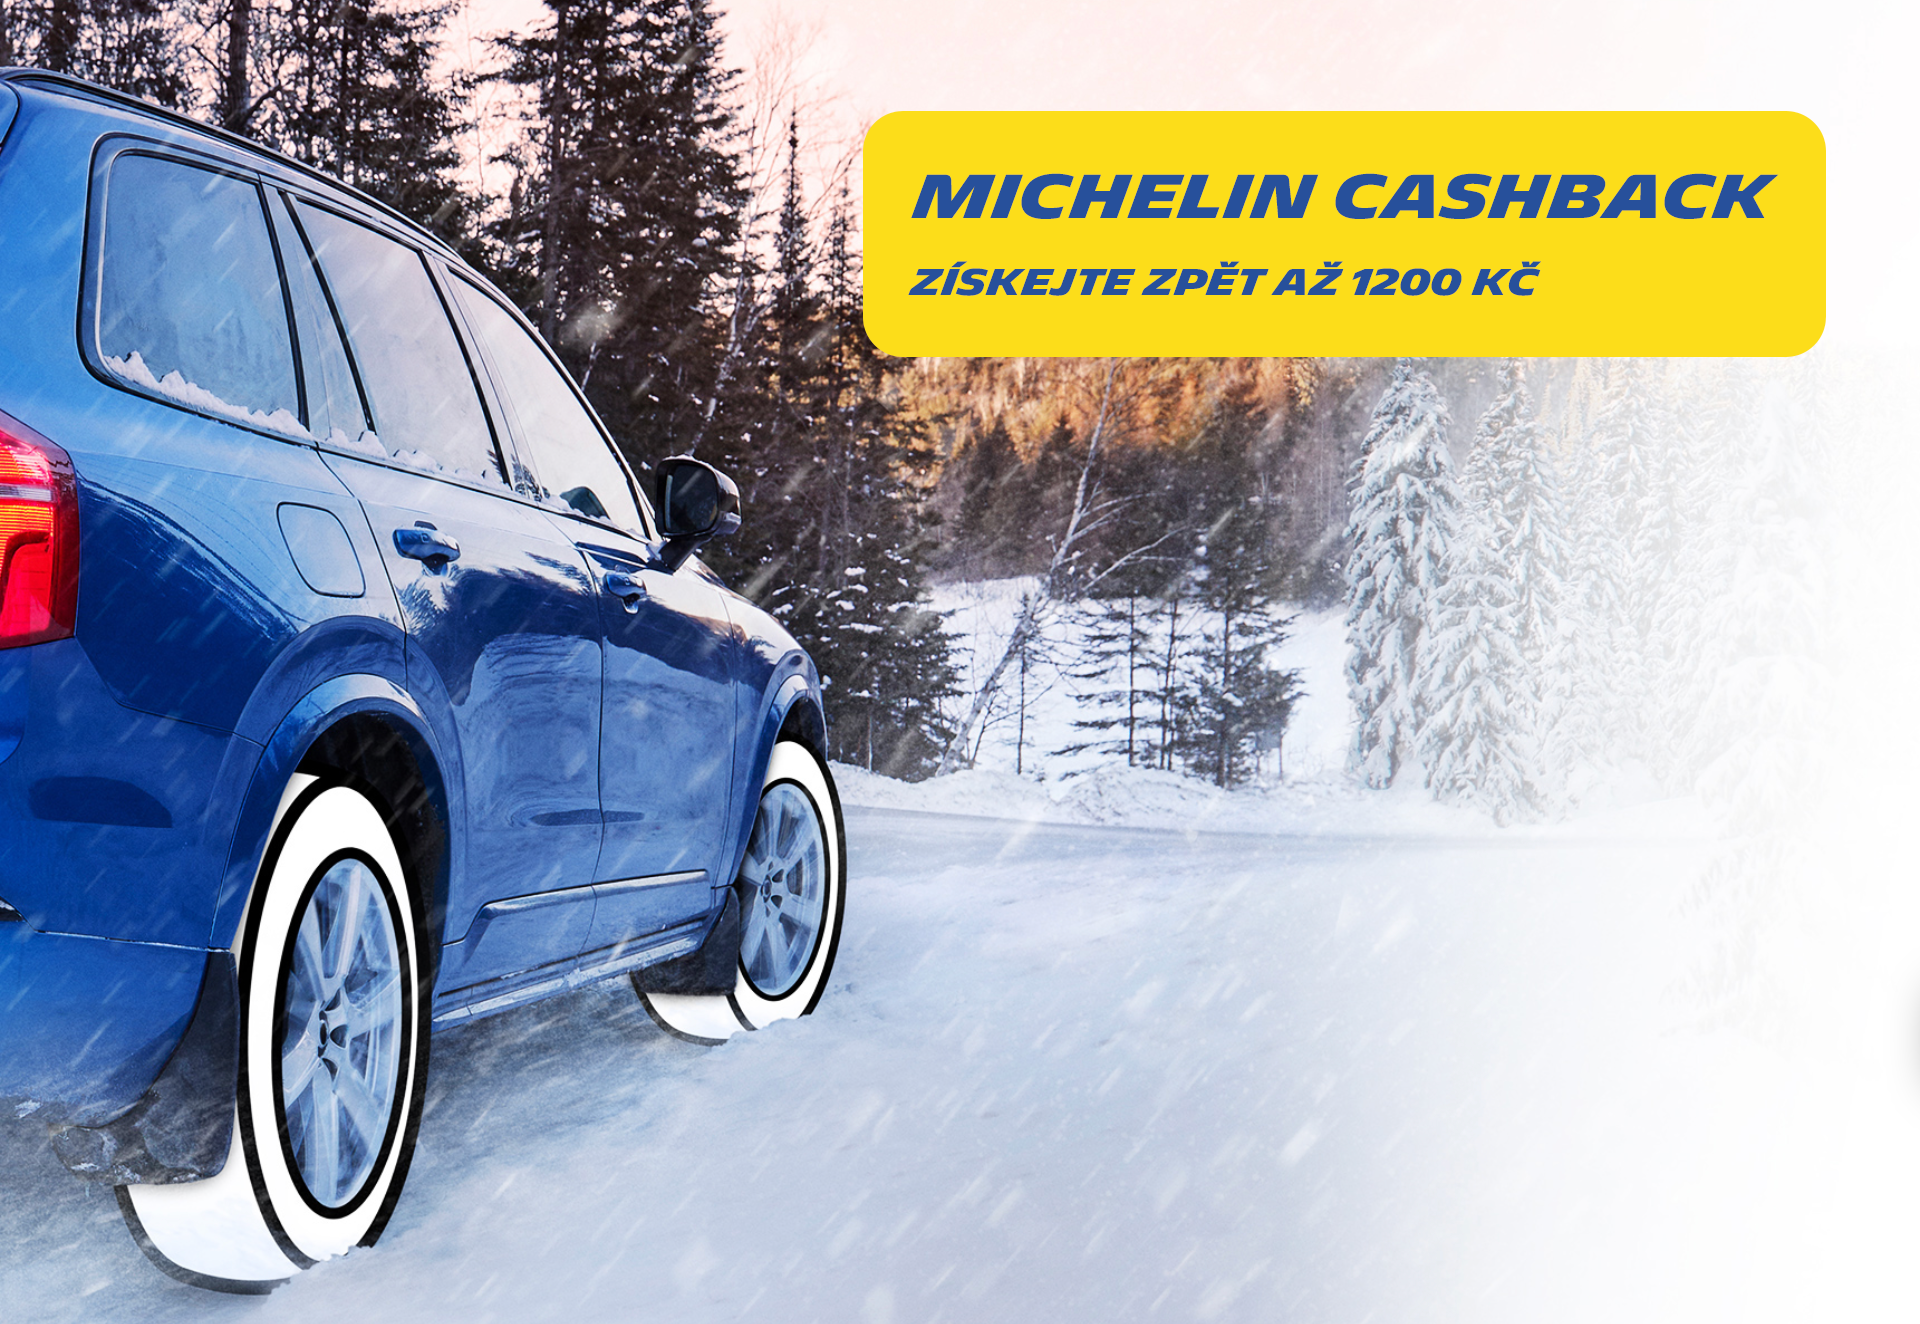 Michelin Cashback - získejte zpět až 1200 Kč